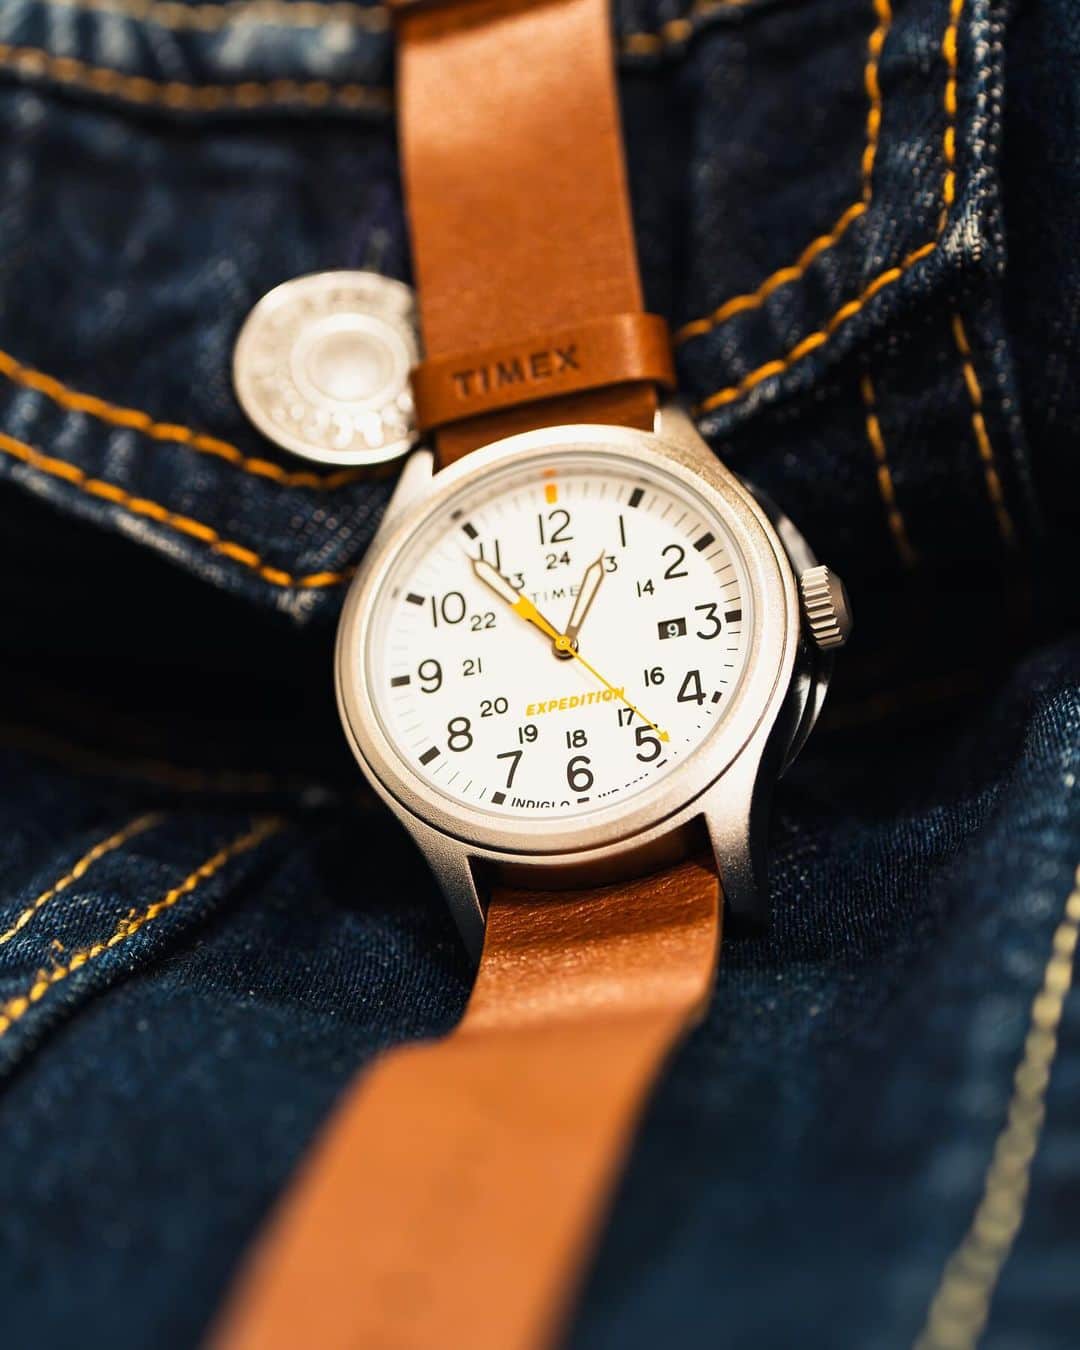 時計倉庫TOKIA 公式アカウントのインスタグラム：「⌚️ 【商品紹介】 TIMEX 品番: TW2V07600  今回はTIMEXのお時計をご紹介します！ TIMEXがもつ長い腕時計に対する歴史を基に、現代のライフスタイルからインスピレーションを得た、そんなデザインが特徴的なお時計です。 肌馴染みのいいレザーのベルトは、裏蓋を覆っているデザインなので金属アレルギーの方でも付けることが可能だと思います。また白、グレー、オレンジの3色でまとめられたデザインや、リューズを押し込むと文字盤全体が光るなど時間の確認がしやすい要素が盛り込まれた一本です。  大きさや実際の色味など、ぜひ店頭でお試しください！スタッフ一同、心よりお待ちしております🙇‍♀️  ……………………………………………………….................  ☟オンラインショップはプロフィールURLから☟ @tokia_official  ……………………………………………………….................  #時計倉庫 #時計倉庫tokia #腕時計 #watch #手表 #腕元倶楽部 #腕時計好きな人と繋がりたい #timex #timexwatch #タイメックス」